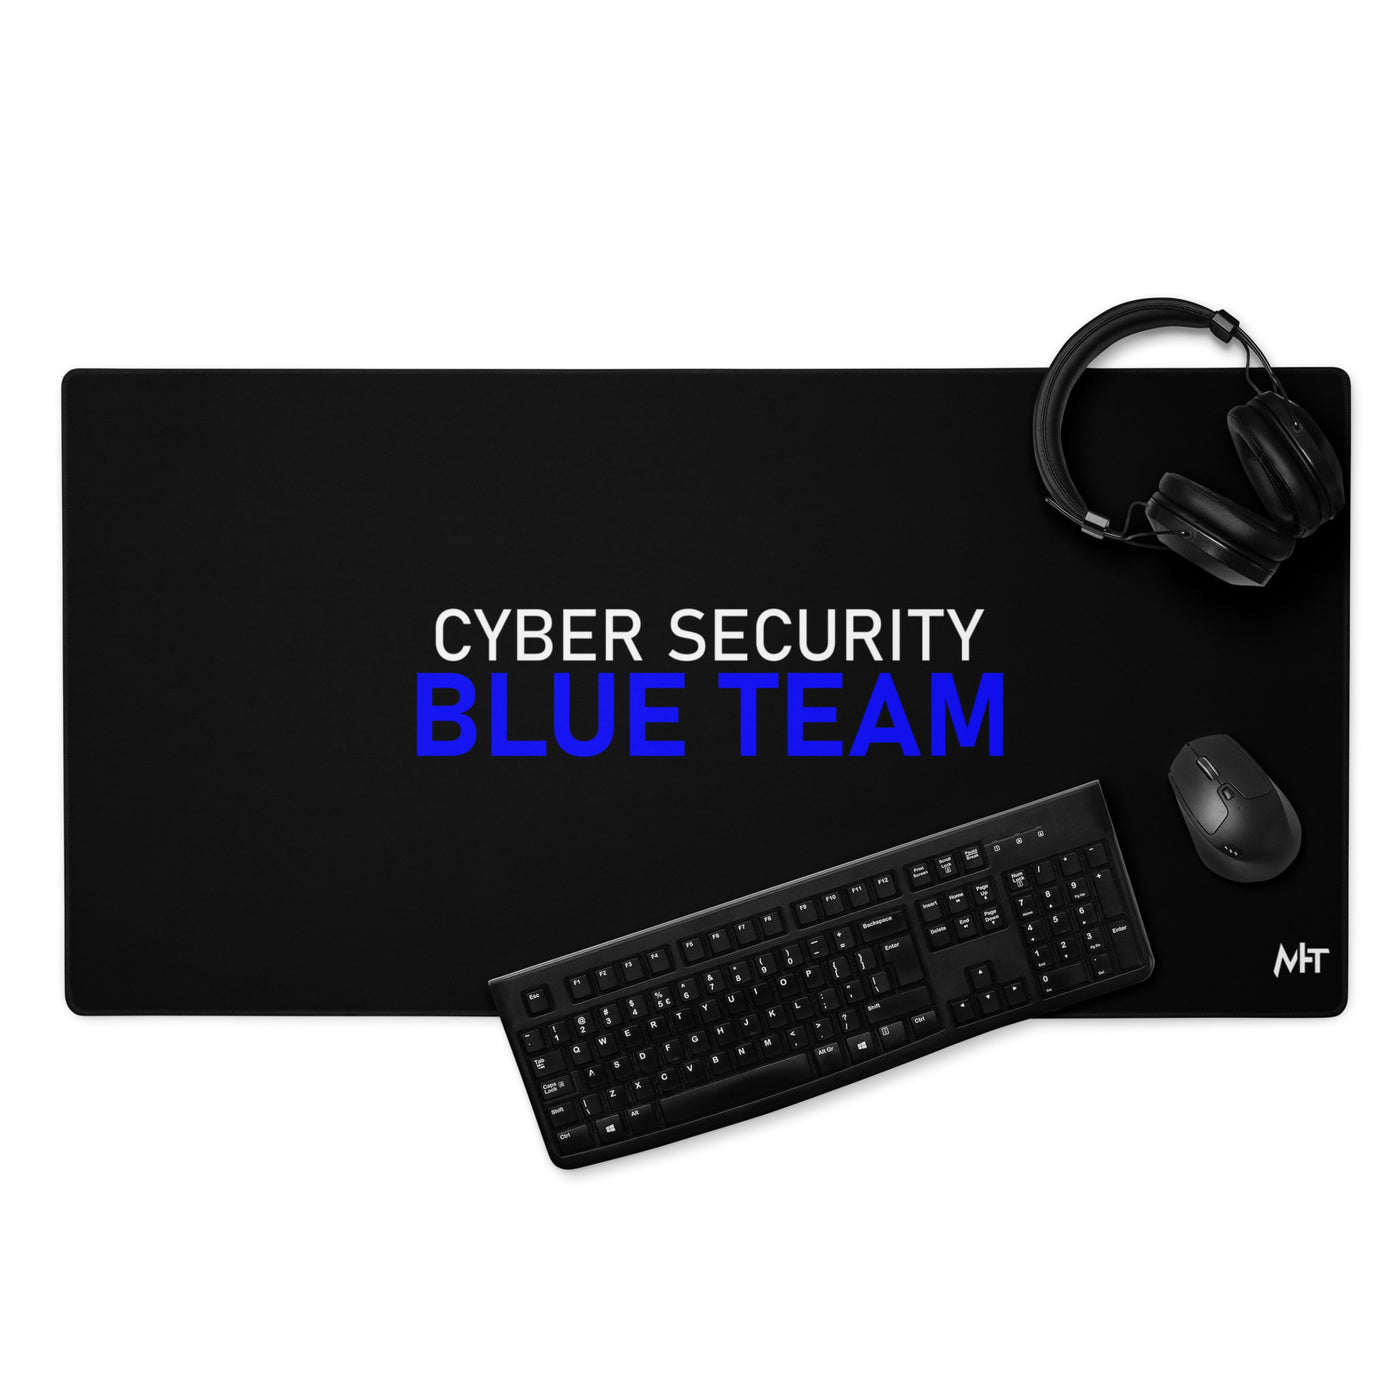 Cyber Security Blue team V4 - Desk Mat